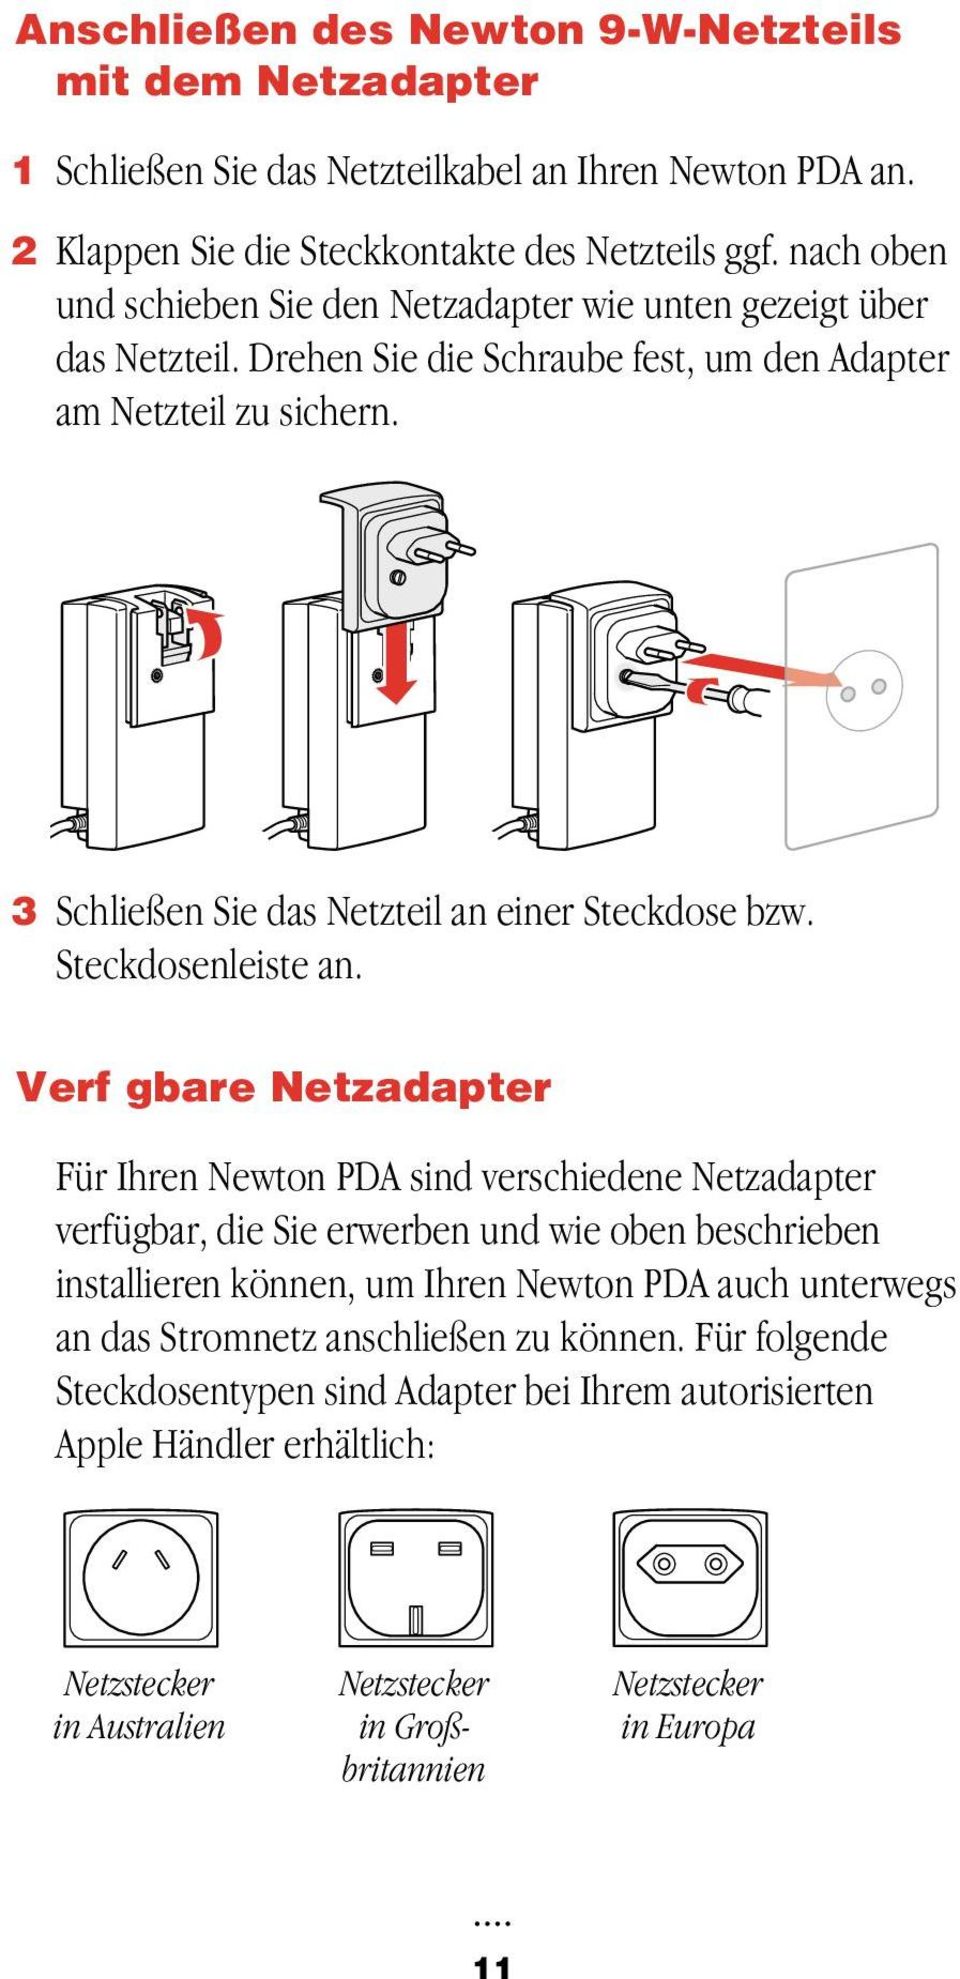 3 Schließen Sie das Netzteil an einer Steckdose bzw. Steckdosenleiste an.